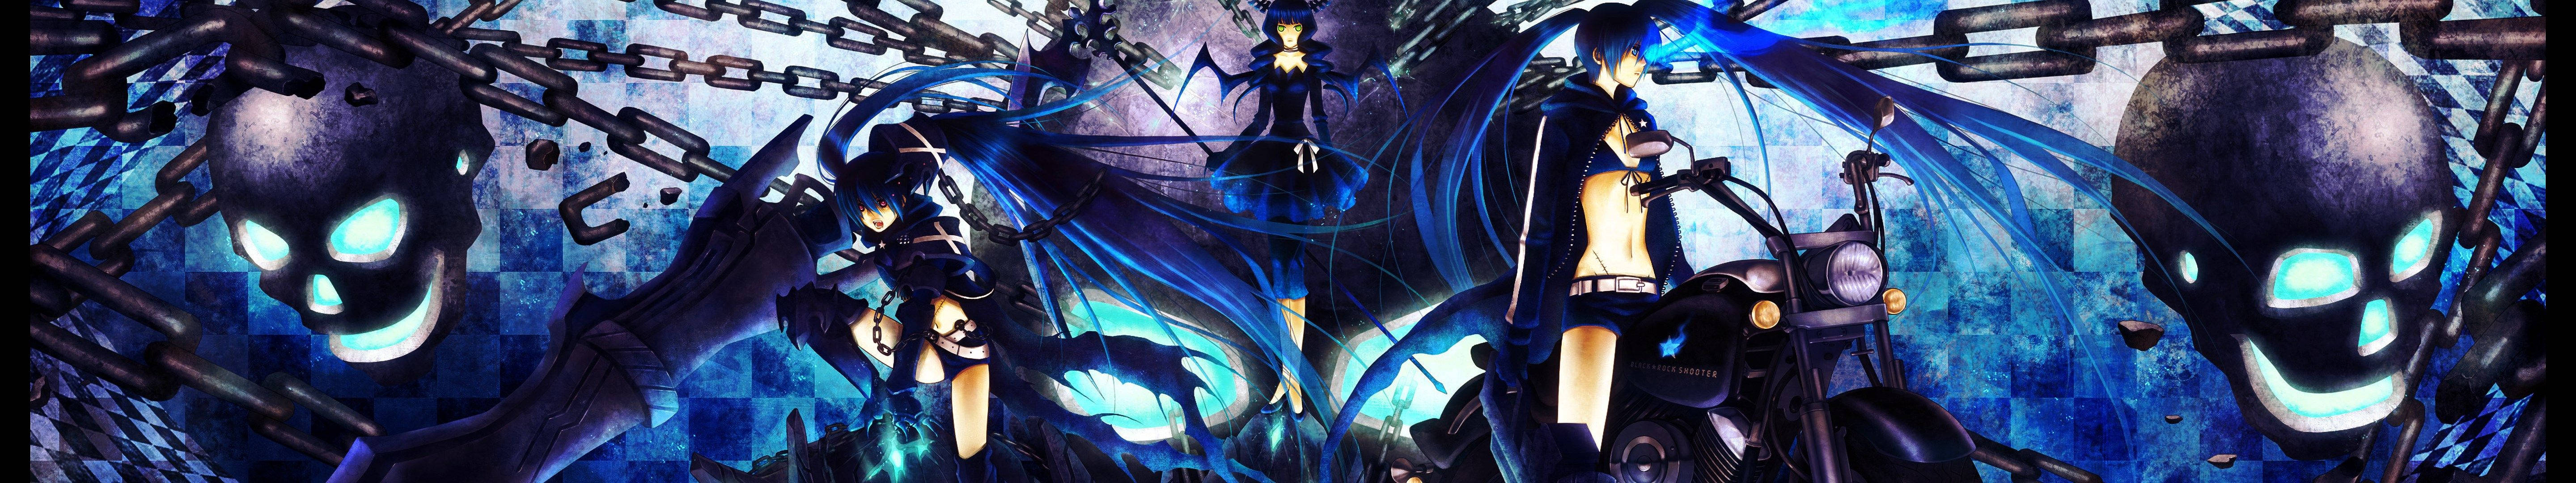 Mysterious Blue Anime Girl Wallpaper